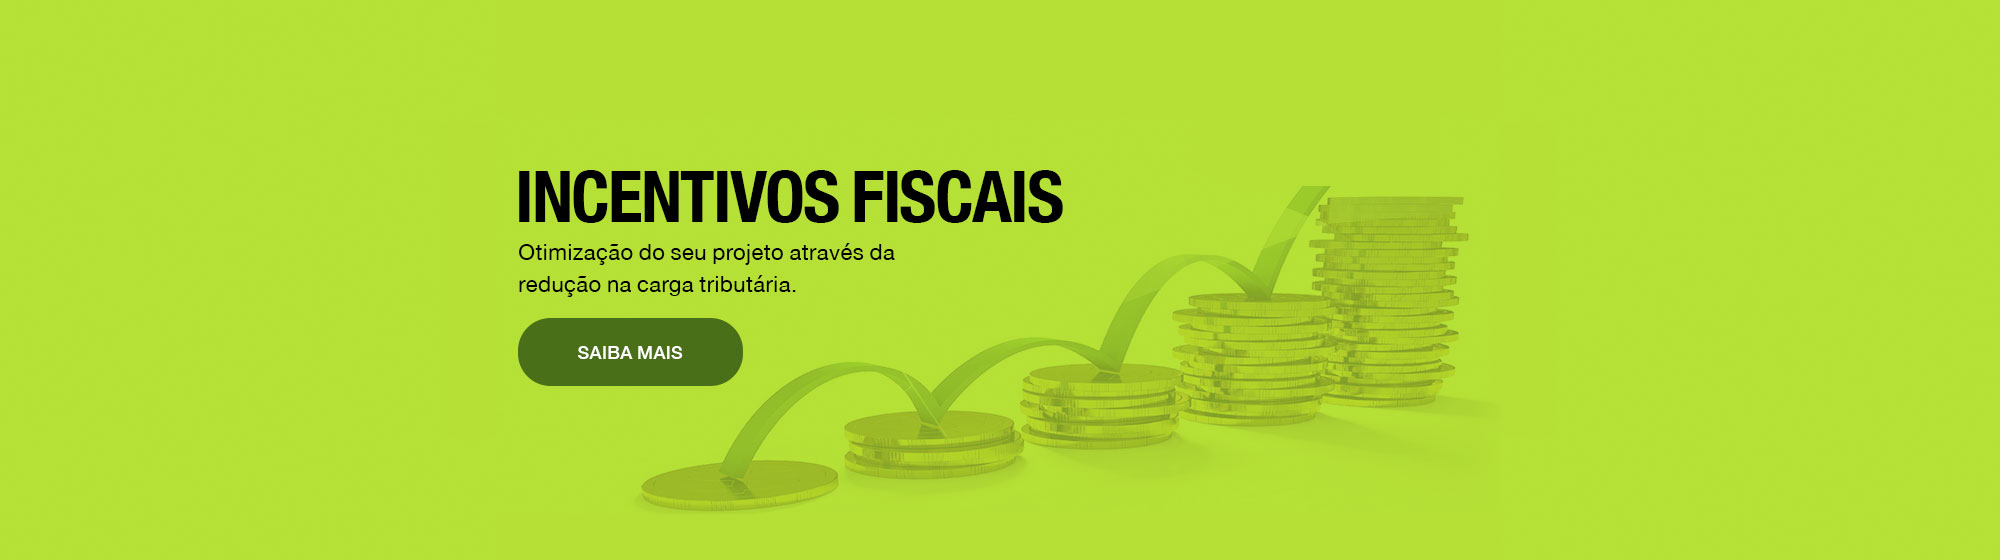 Incentivos Fiscais pt_br